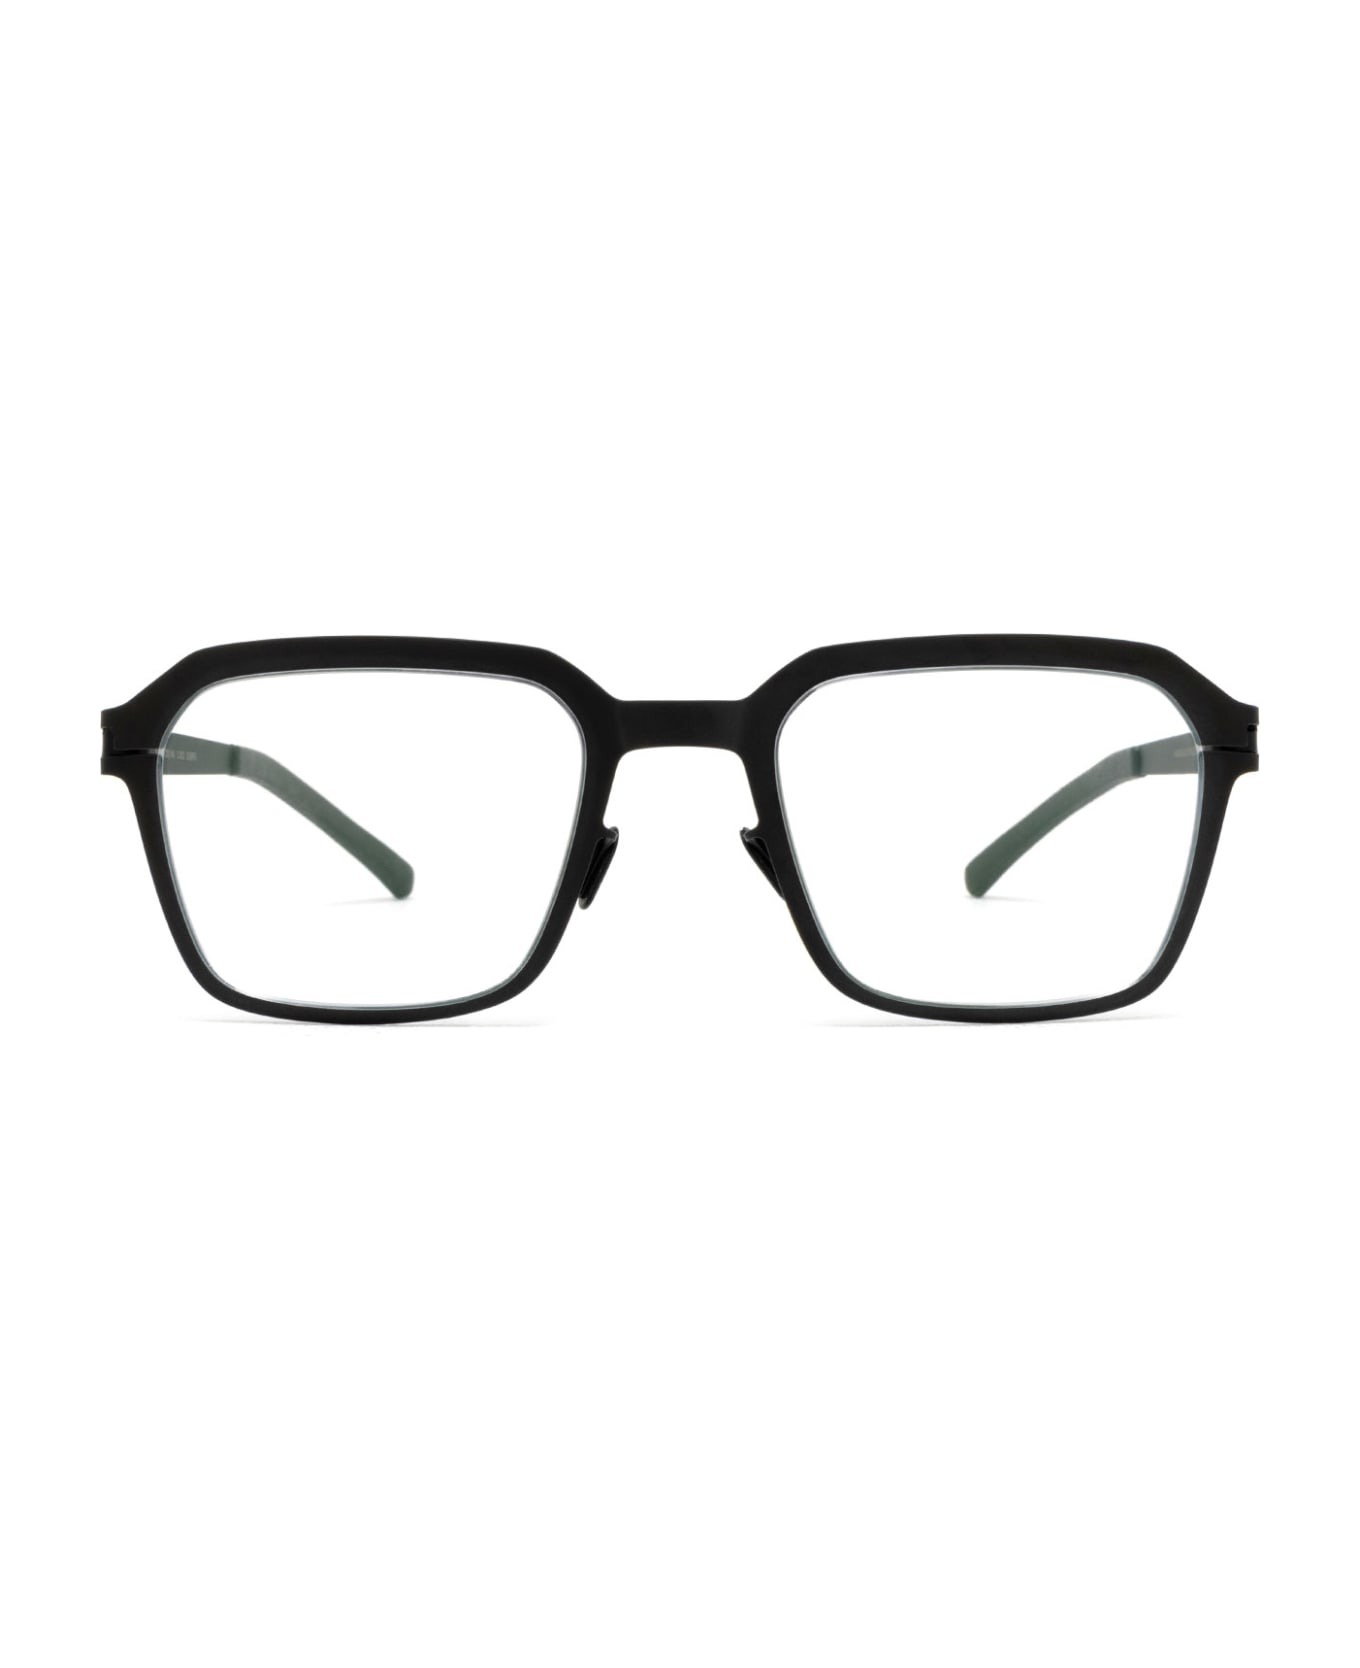 Mykita Garland Black Glasses - Black